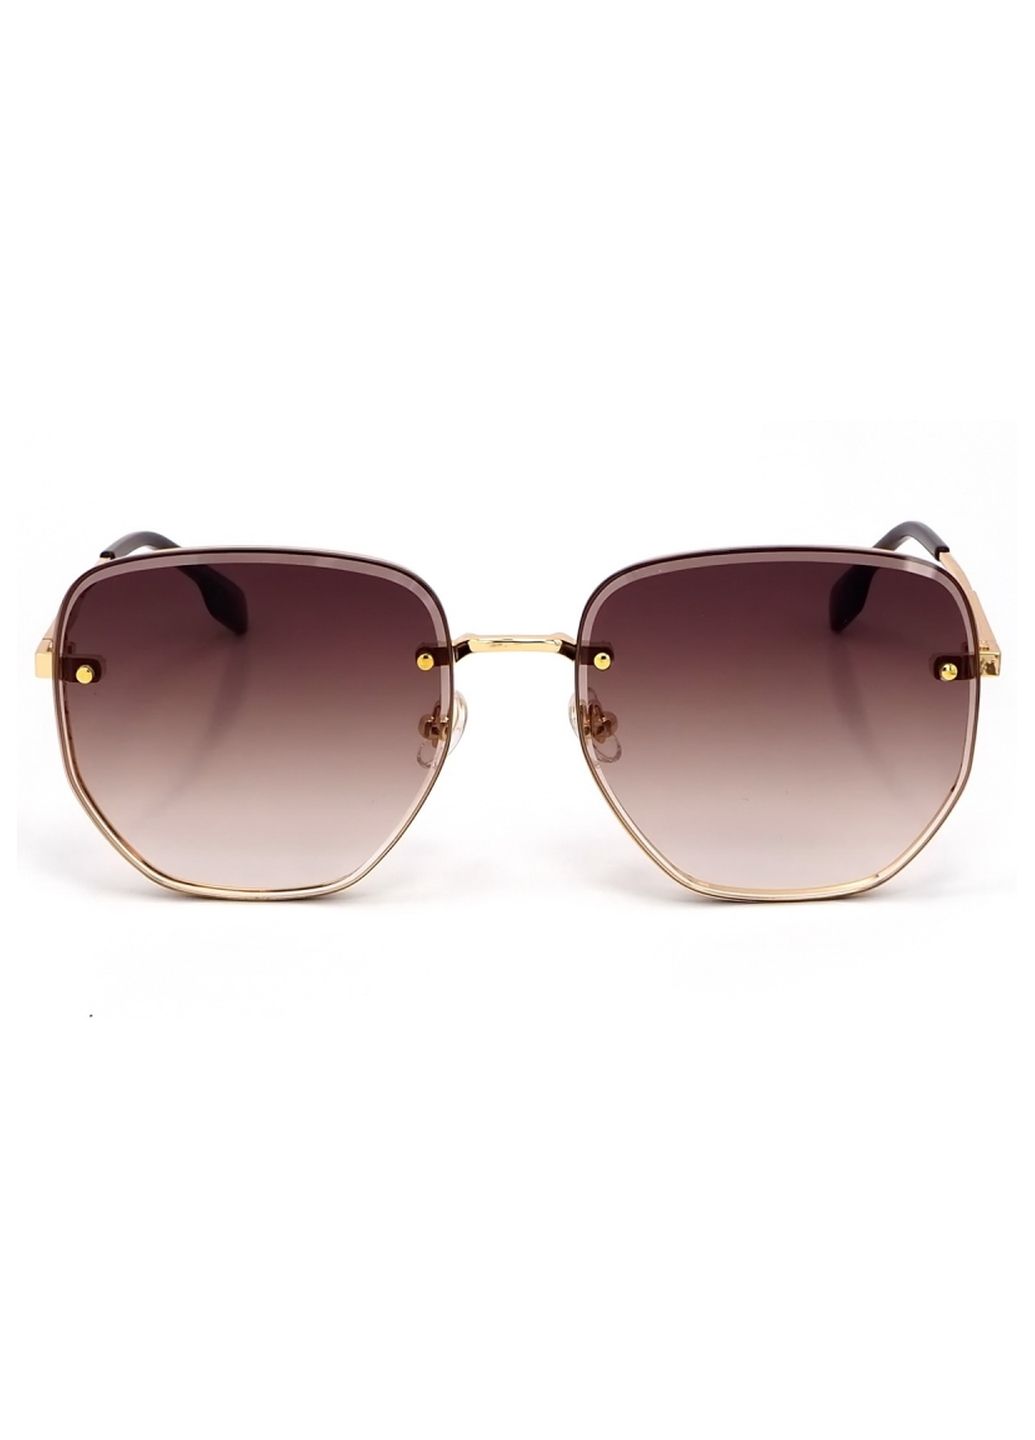 Купить Женские солнцезащитные очки Merlini с поляризацией S31843 117131 - Золотистый в интернет-магазине